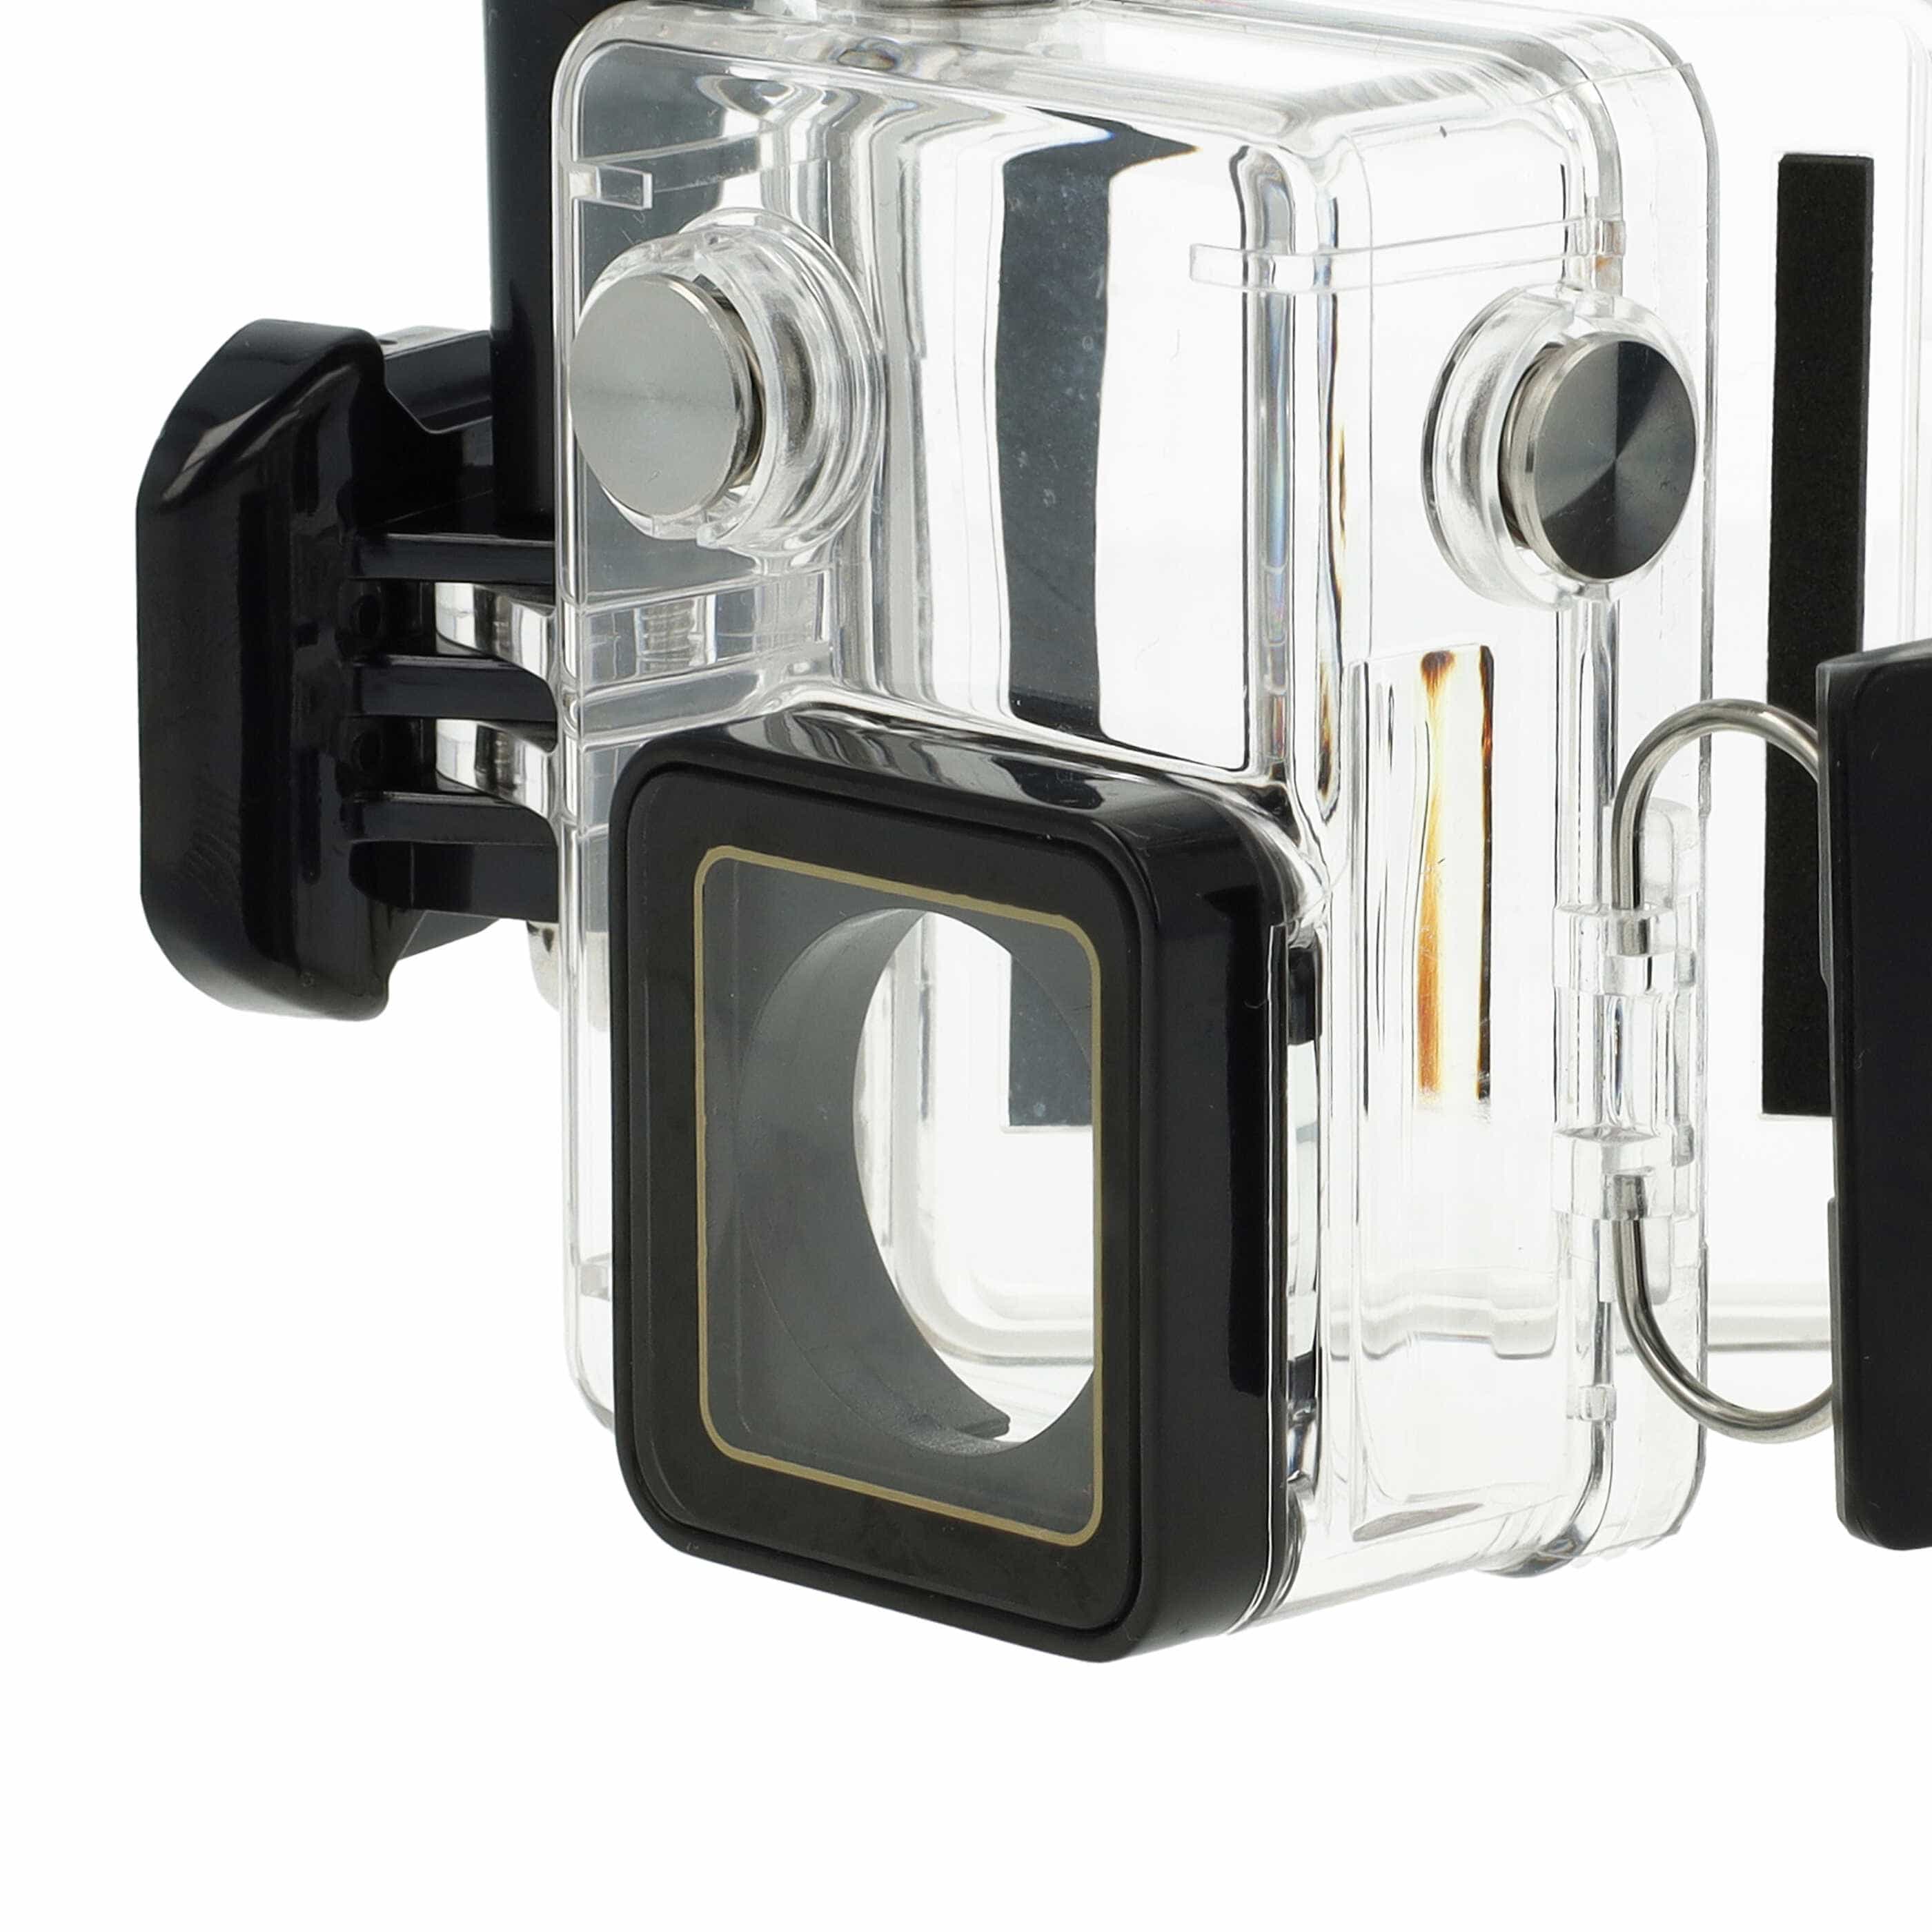 Carcasa sumergible para cámaras acción GoPro Hero 3, 3+, 4 - Profundidad máx. 45 m